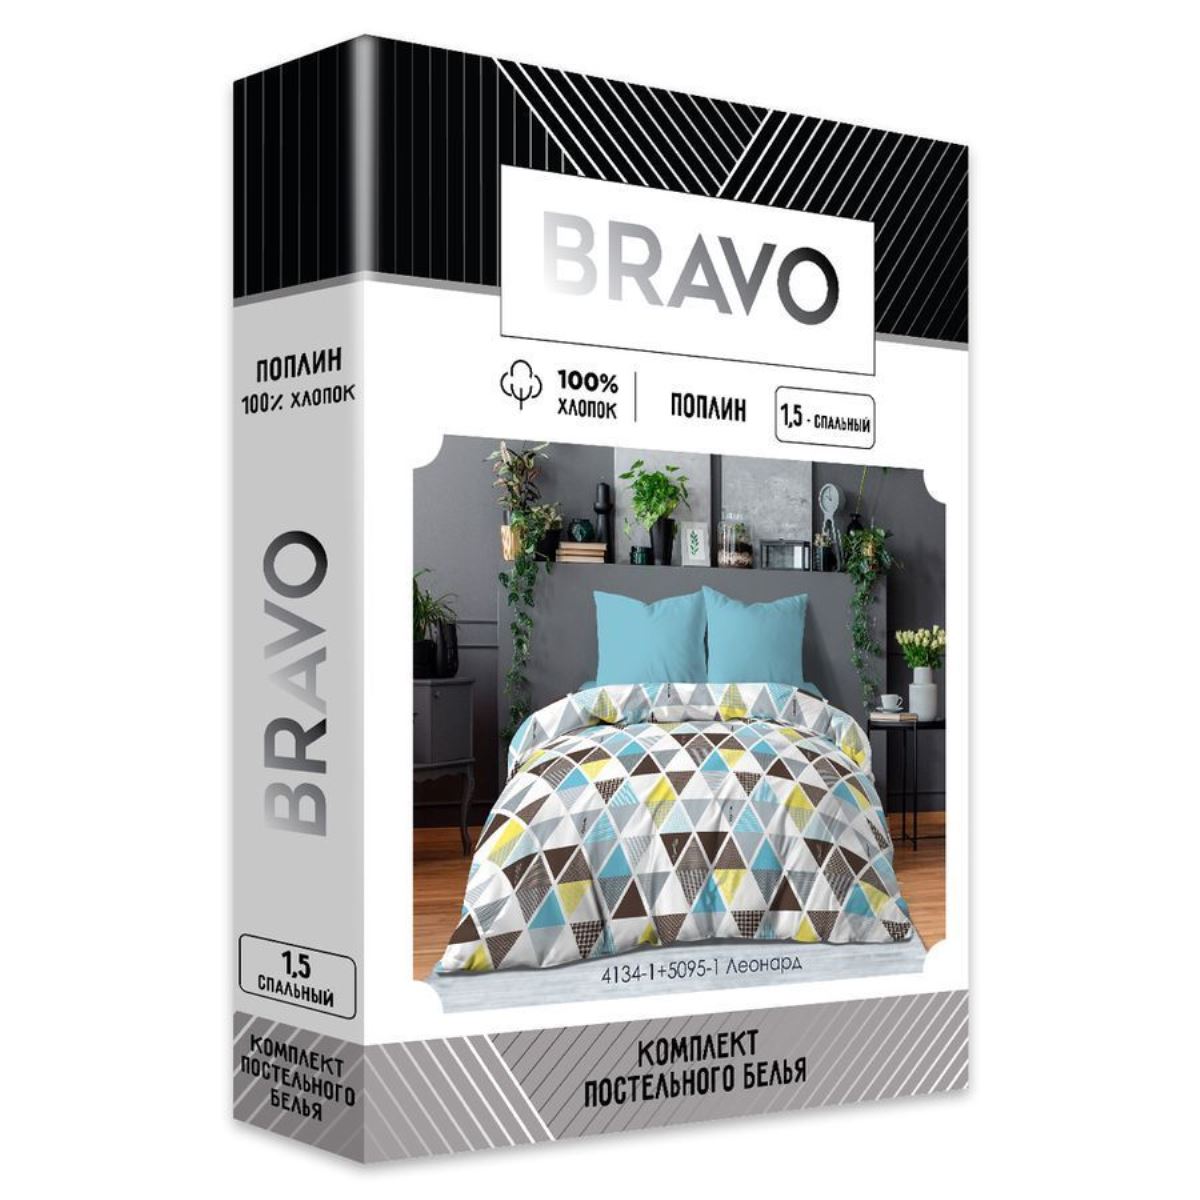 Комплект постельного белья Bravo Леонард 1.5 спальный наволочки 70х70 м.101 рис.4134-1+5095-1 - фото 6